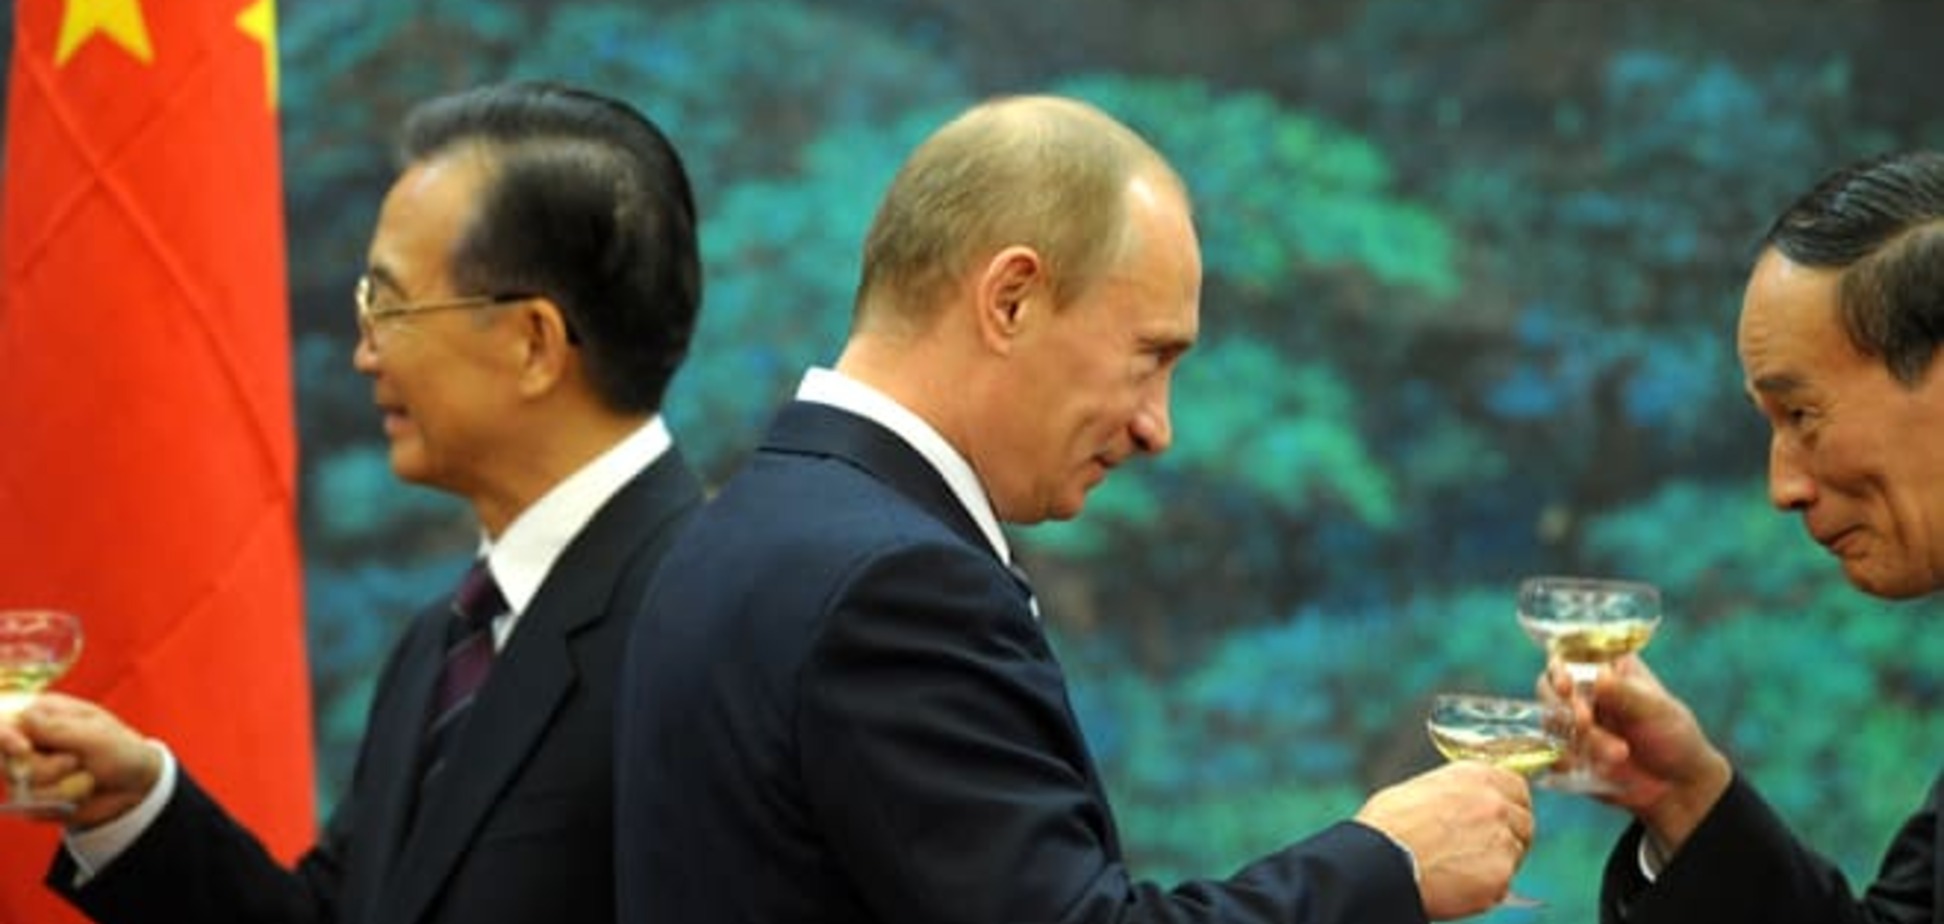 Заходу потрібно зупинити Путіна в Україні, щоб потім не воювати з Китаєм - іноЗМІ